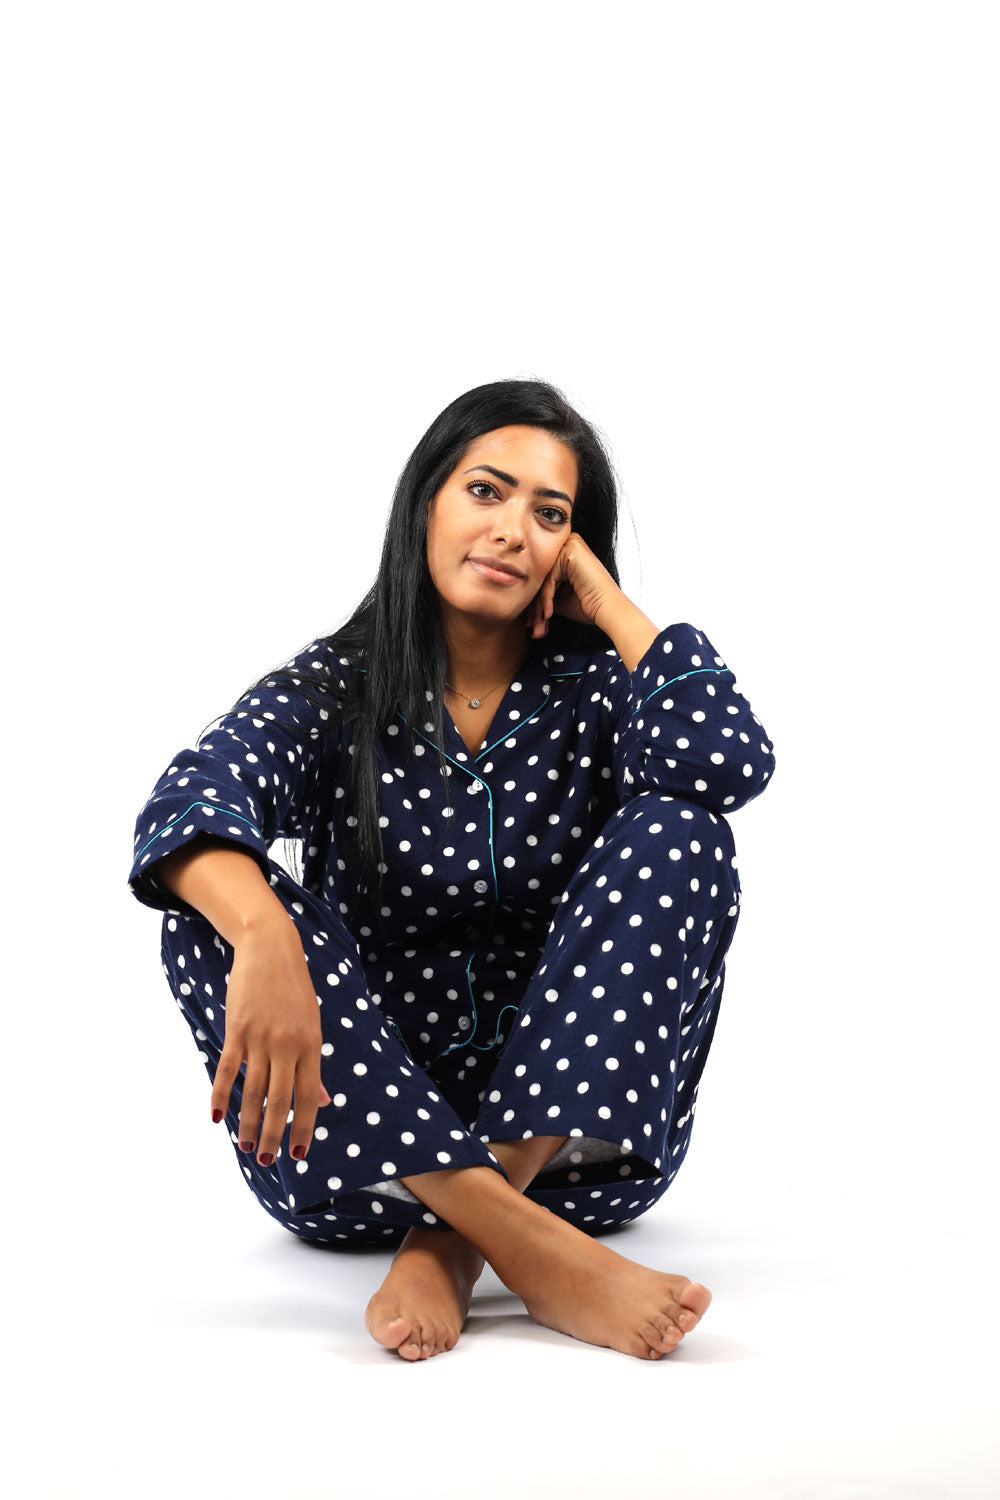 Polka Dots Marine Flannel Pajama Set